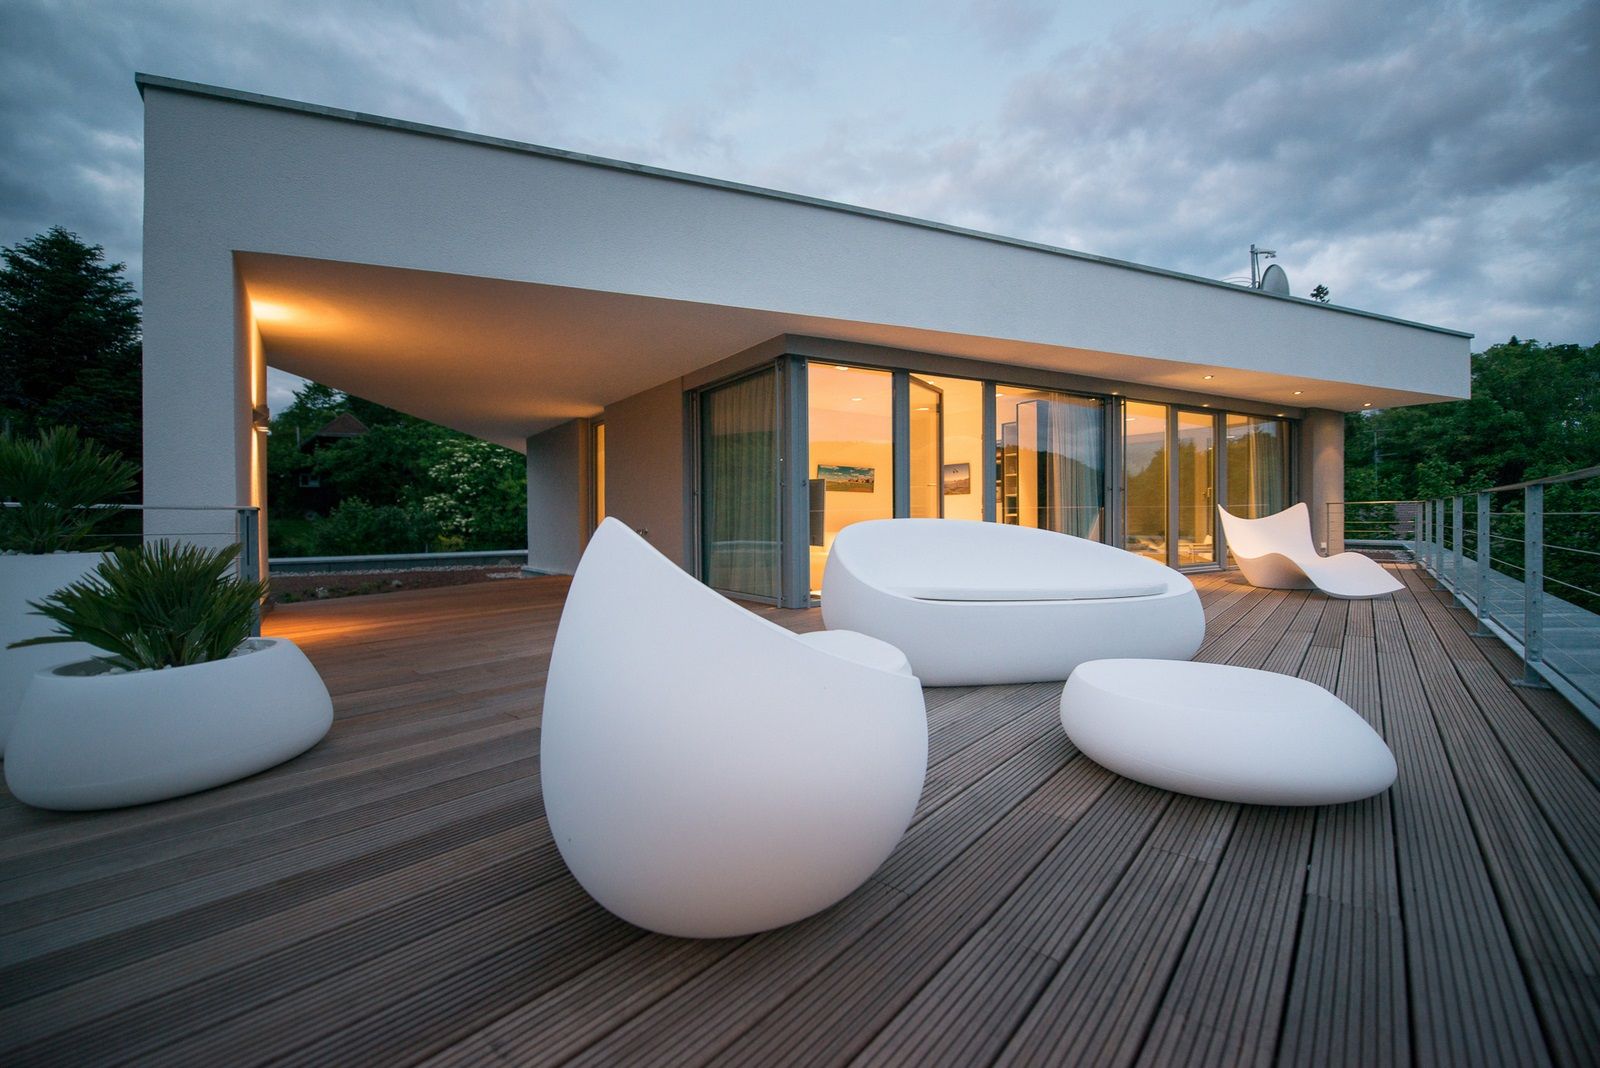 Moderne Villa am Hang mit Pool, Avantecture GmbH Avantecture GmbH بلكونة أو شرفة